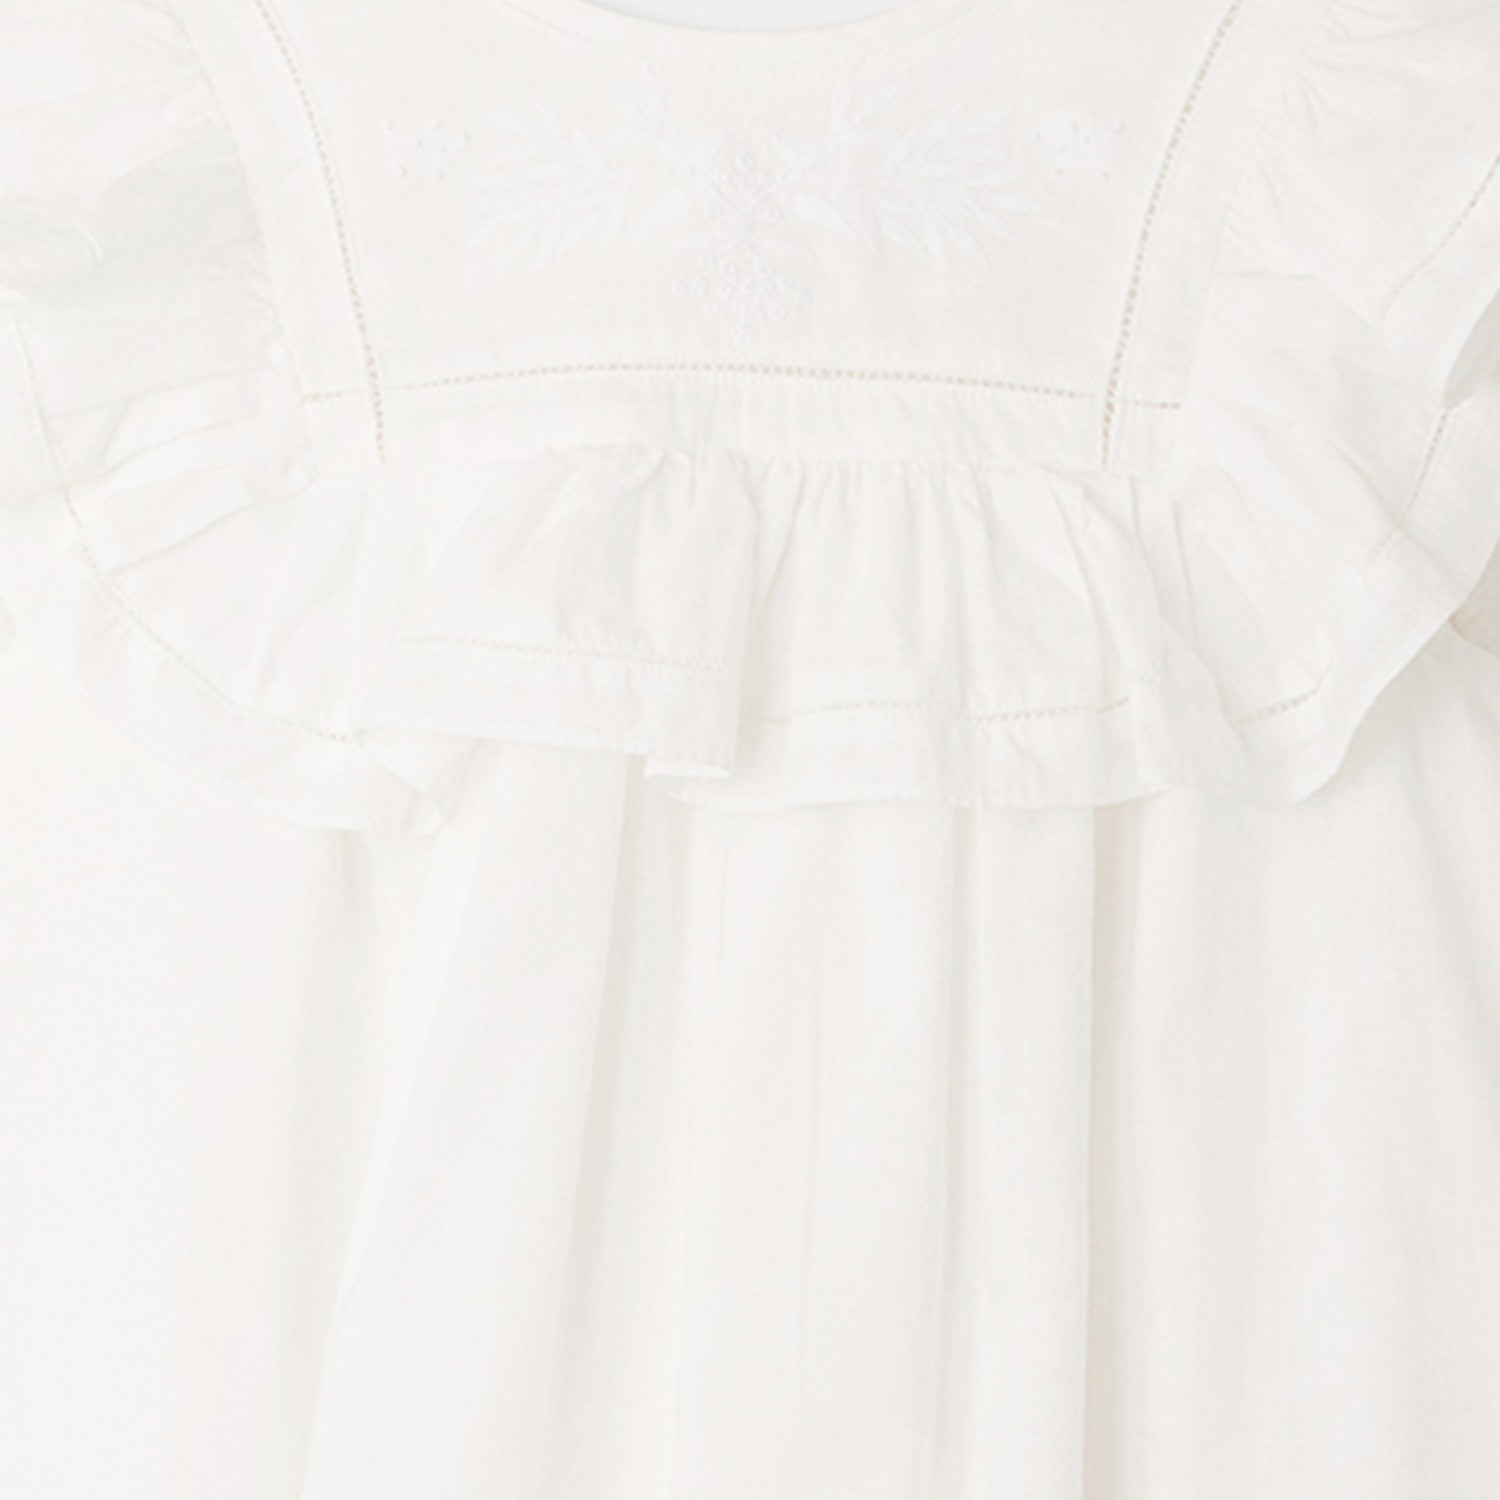 Girls White Ruffled Cotton Dress